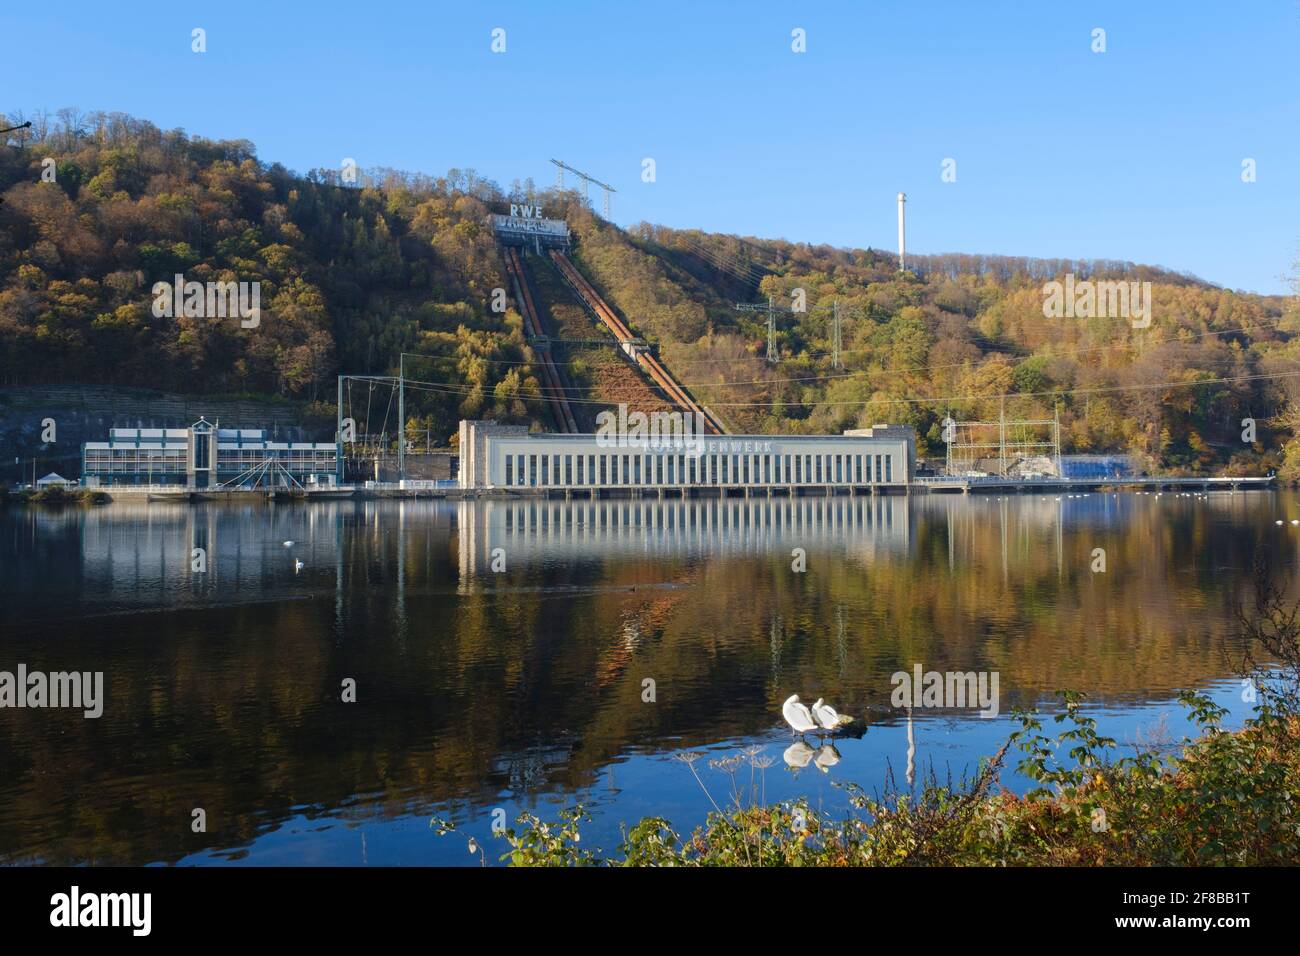 Pumpspeicherkraftwerk, Koepchenwerk am See Hengstey, Herdecke, Ruhrgebiet, Nordrhein-Westfalen, Deutschland, Europa Stockfoto